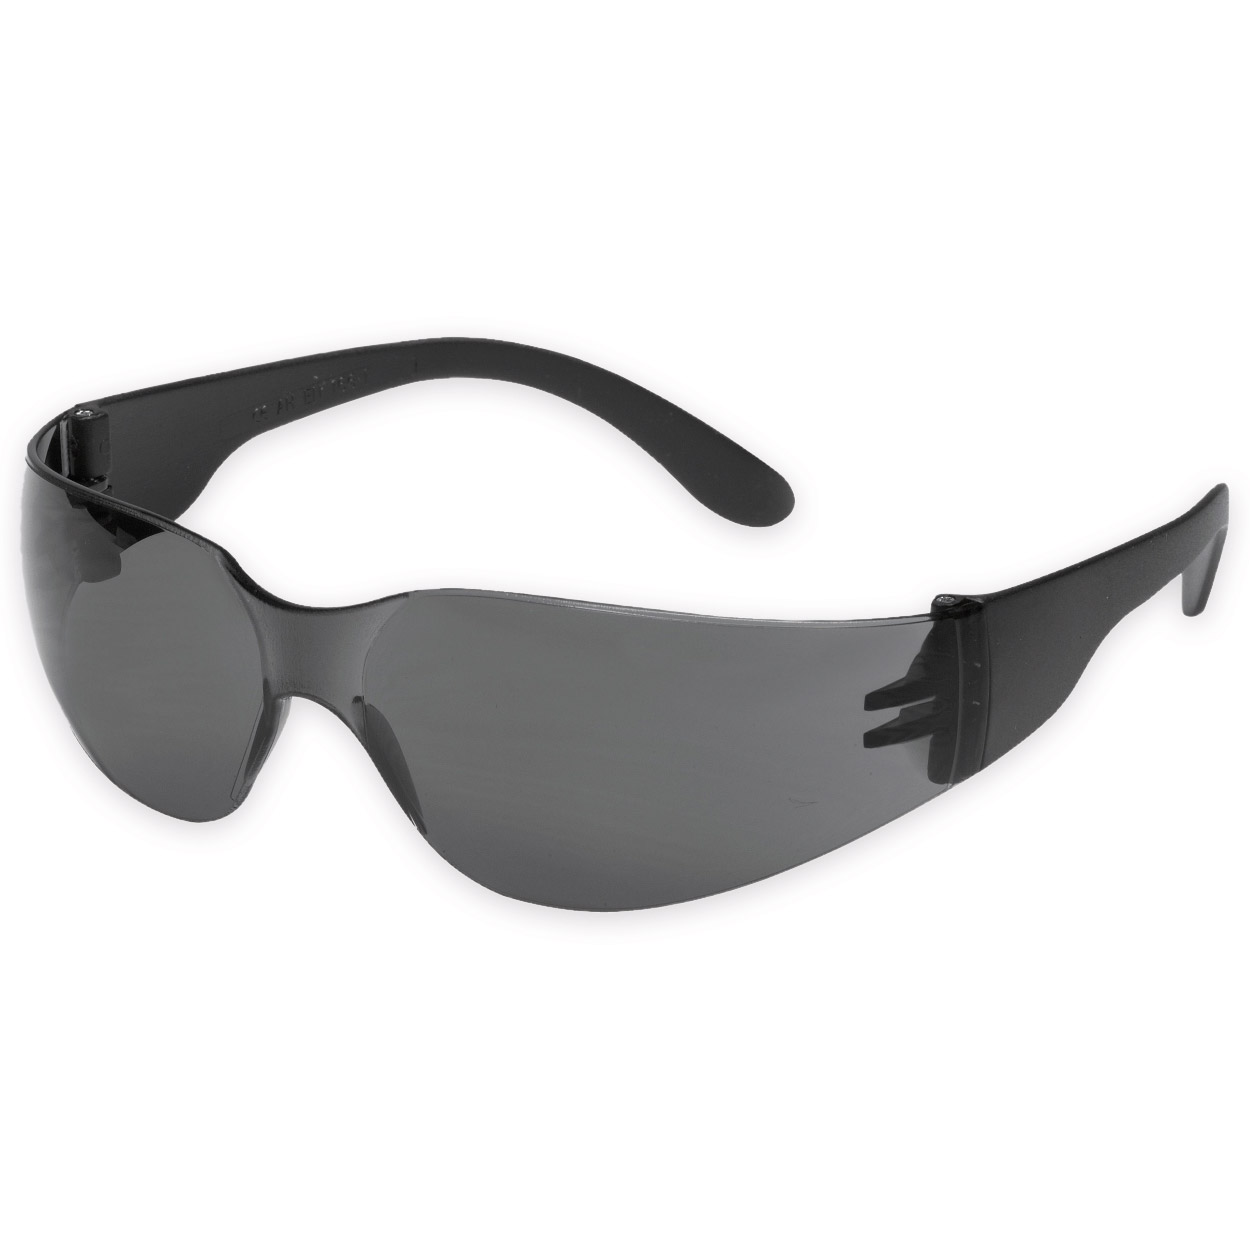 Schutzbrille TECTOR CHAMP in schwarz-grau